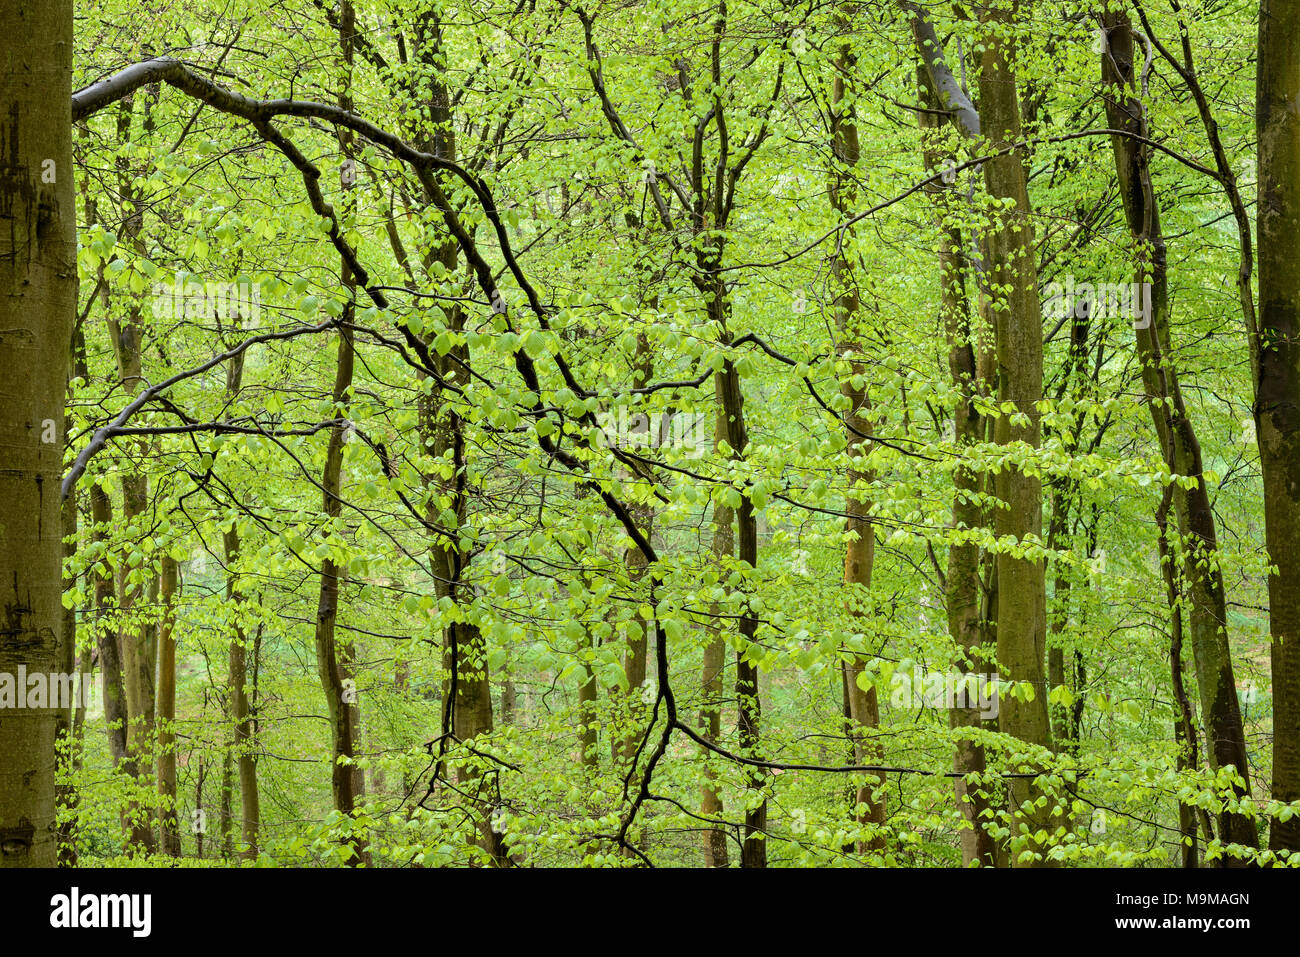 Frischen hellgrünen Blätter an den Zweigen eines dichten Buche Wald, nass mit Regenwasser nach einem kurzen Frühling Dusche. Stockfoto